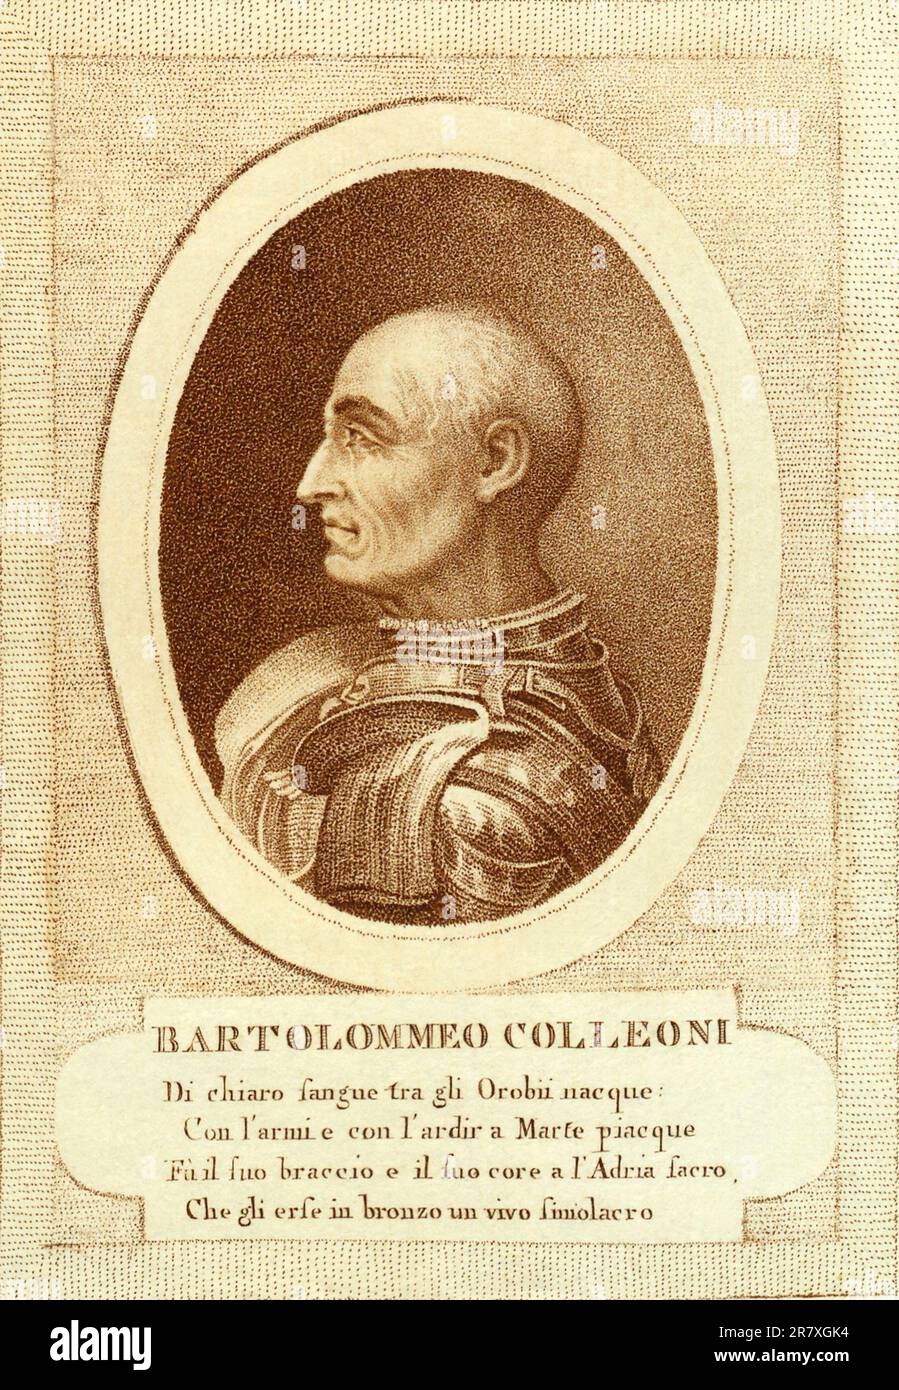 1450 ca , Bergamo , ITALY : The italian Condottiero BARTOLOMEO COLLEONI ( 1395 - 1475 ). Engraved portrait by unknown artist from XVIII Century  . -HISTORY - FOTO STORICHE - CONDOTTIERO - PORTRAIT - RITRATTO - ITALIA - Capitano di Ventura - Generale - ritratto - incisione - illustrazione - illustration - profilo - profile - RINASCIMENTO - RENAISSANCE - armatura - armure  ---  Archivio GBB Stock Photo